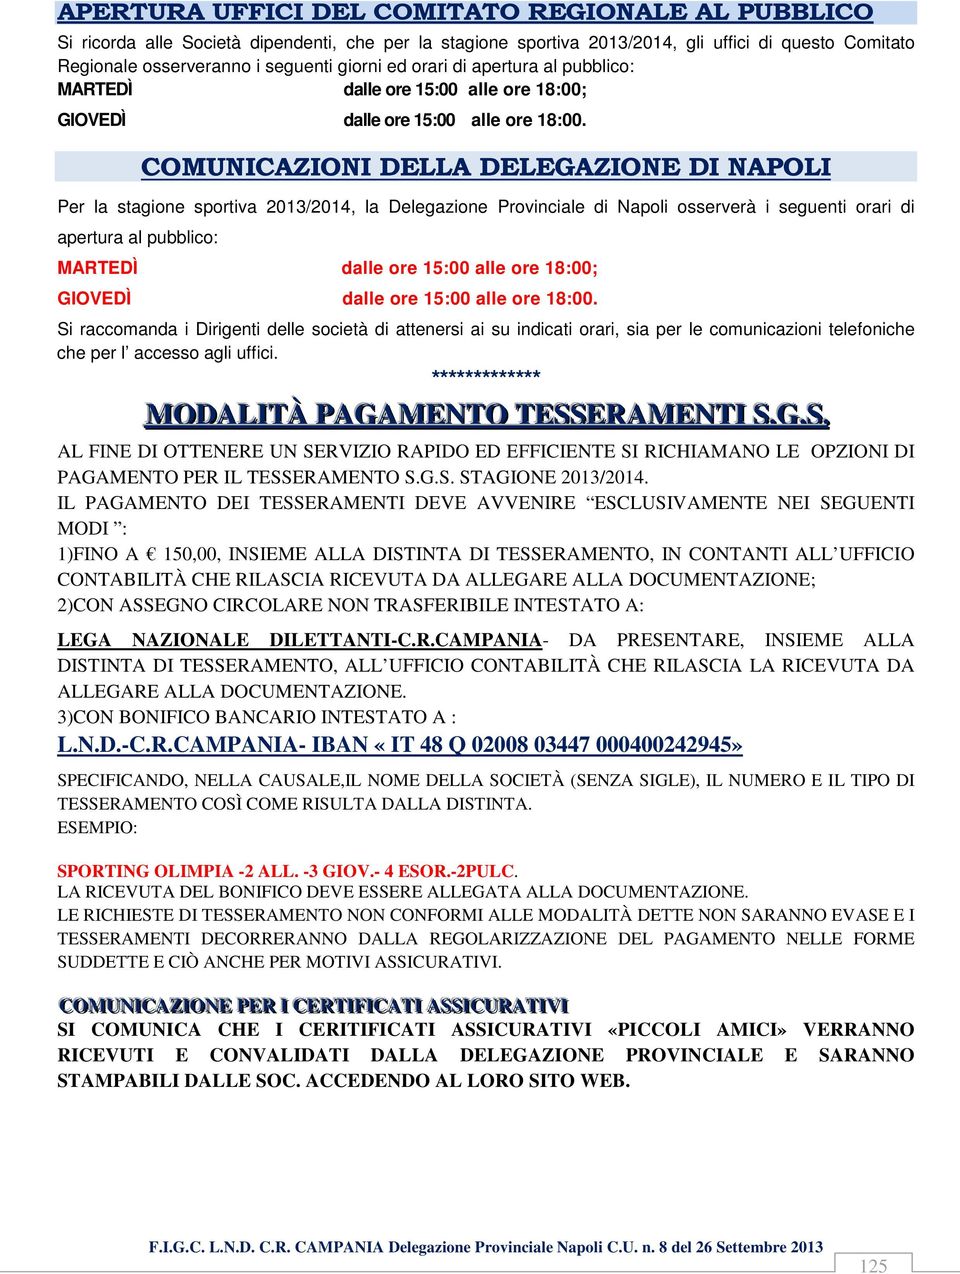 COMUNICAZIONI DELLA DELEGAZIONE DI NAPOLI Per la stagione sportiva 2013/2014, la Delegazione Provinciale di Napoli osserverà i seguenti orari di apertura al pubblico: MARTEDÌ dalle ore 15:00 alle ore